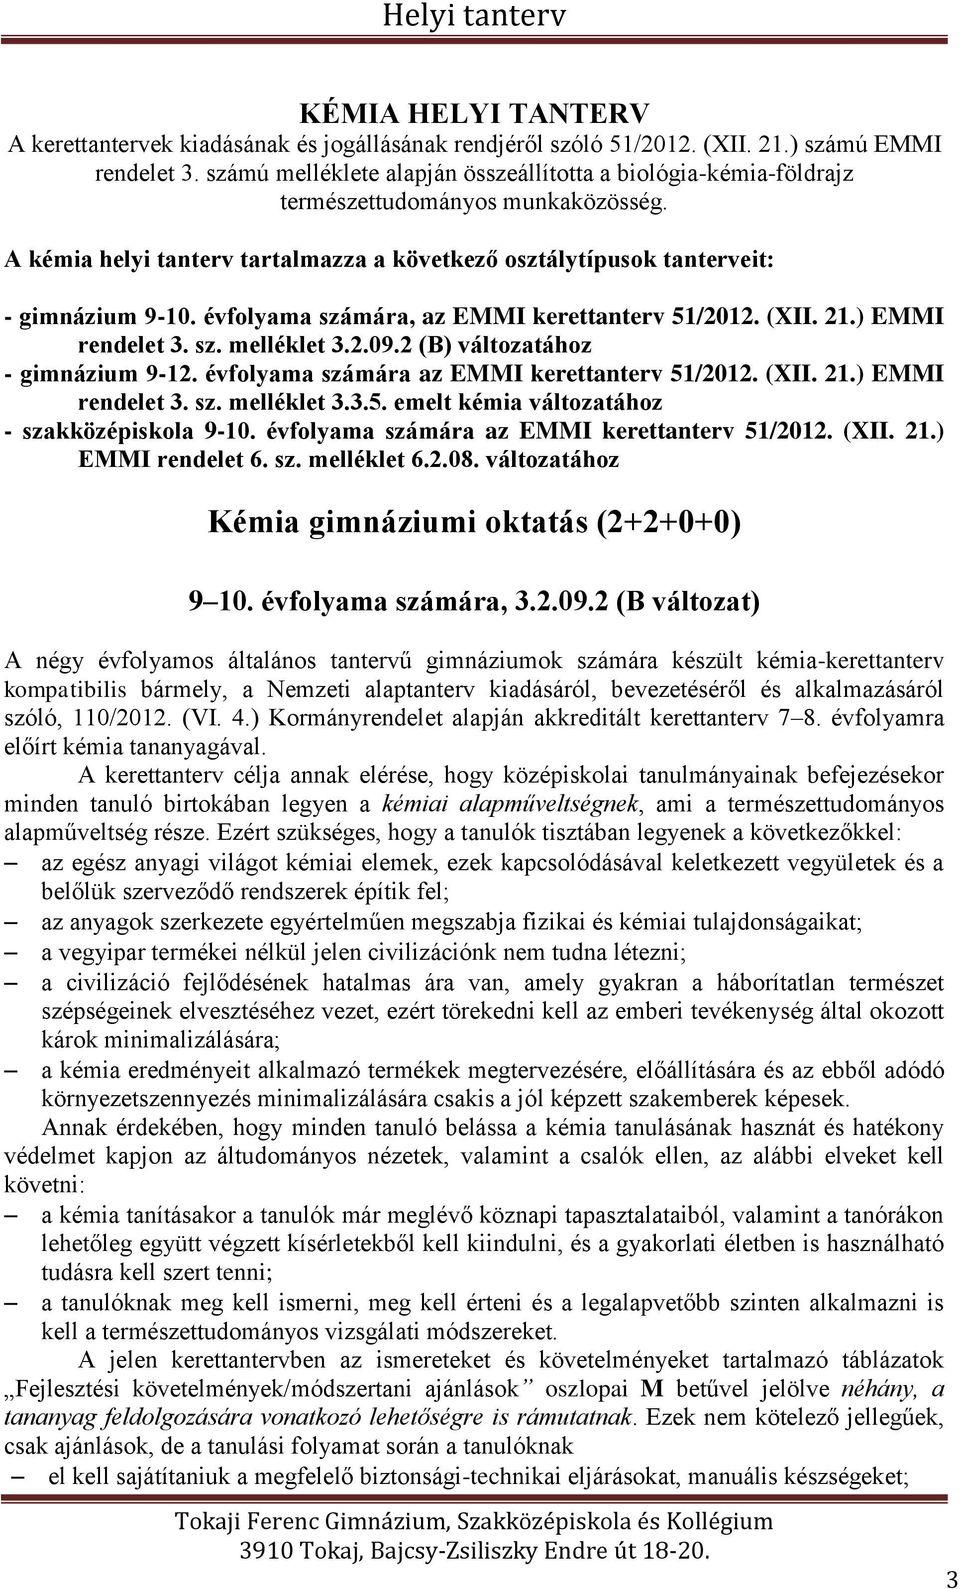 évfolyama számára, az EMMI kerettanterv 51/2012. (XII. 21.) EMMI rendelet 3. sz. melléklet 3.2.09.2 (B) változatához - gimnázium 9-12. évfolyama számára az EMMI kerettanterv 51/2012. (XII. 21.) EMMI rendelet 3. sz. melléklet 3.3.5. emelt kémia változatához - szakközépiskola 9-10.